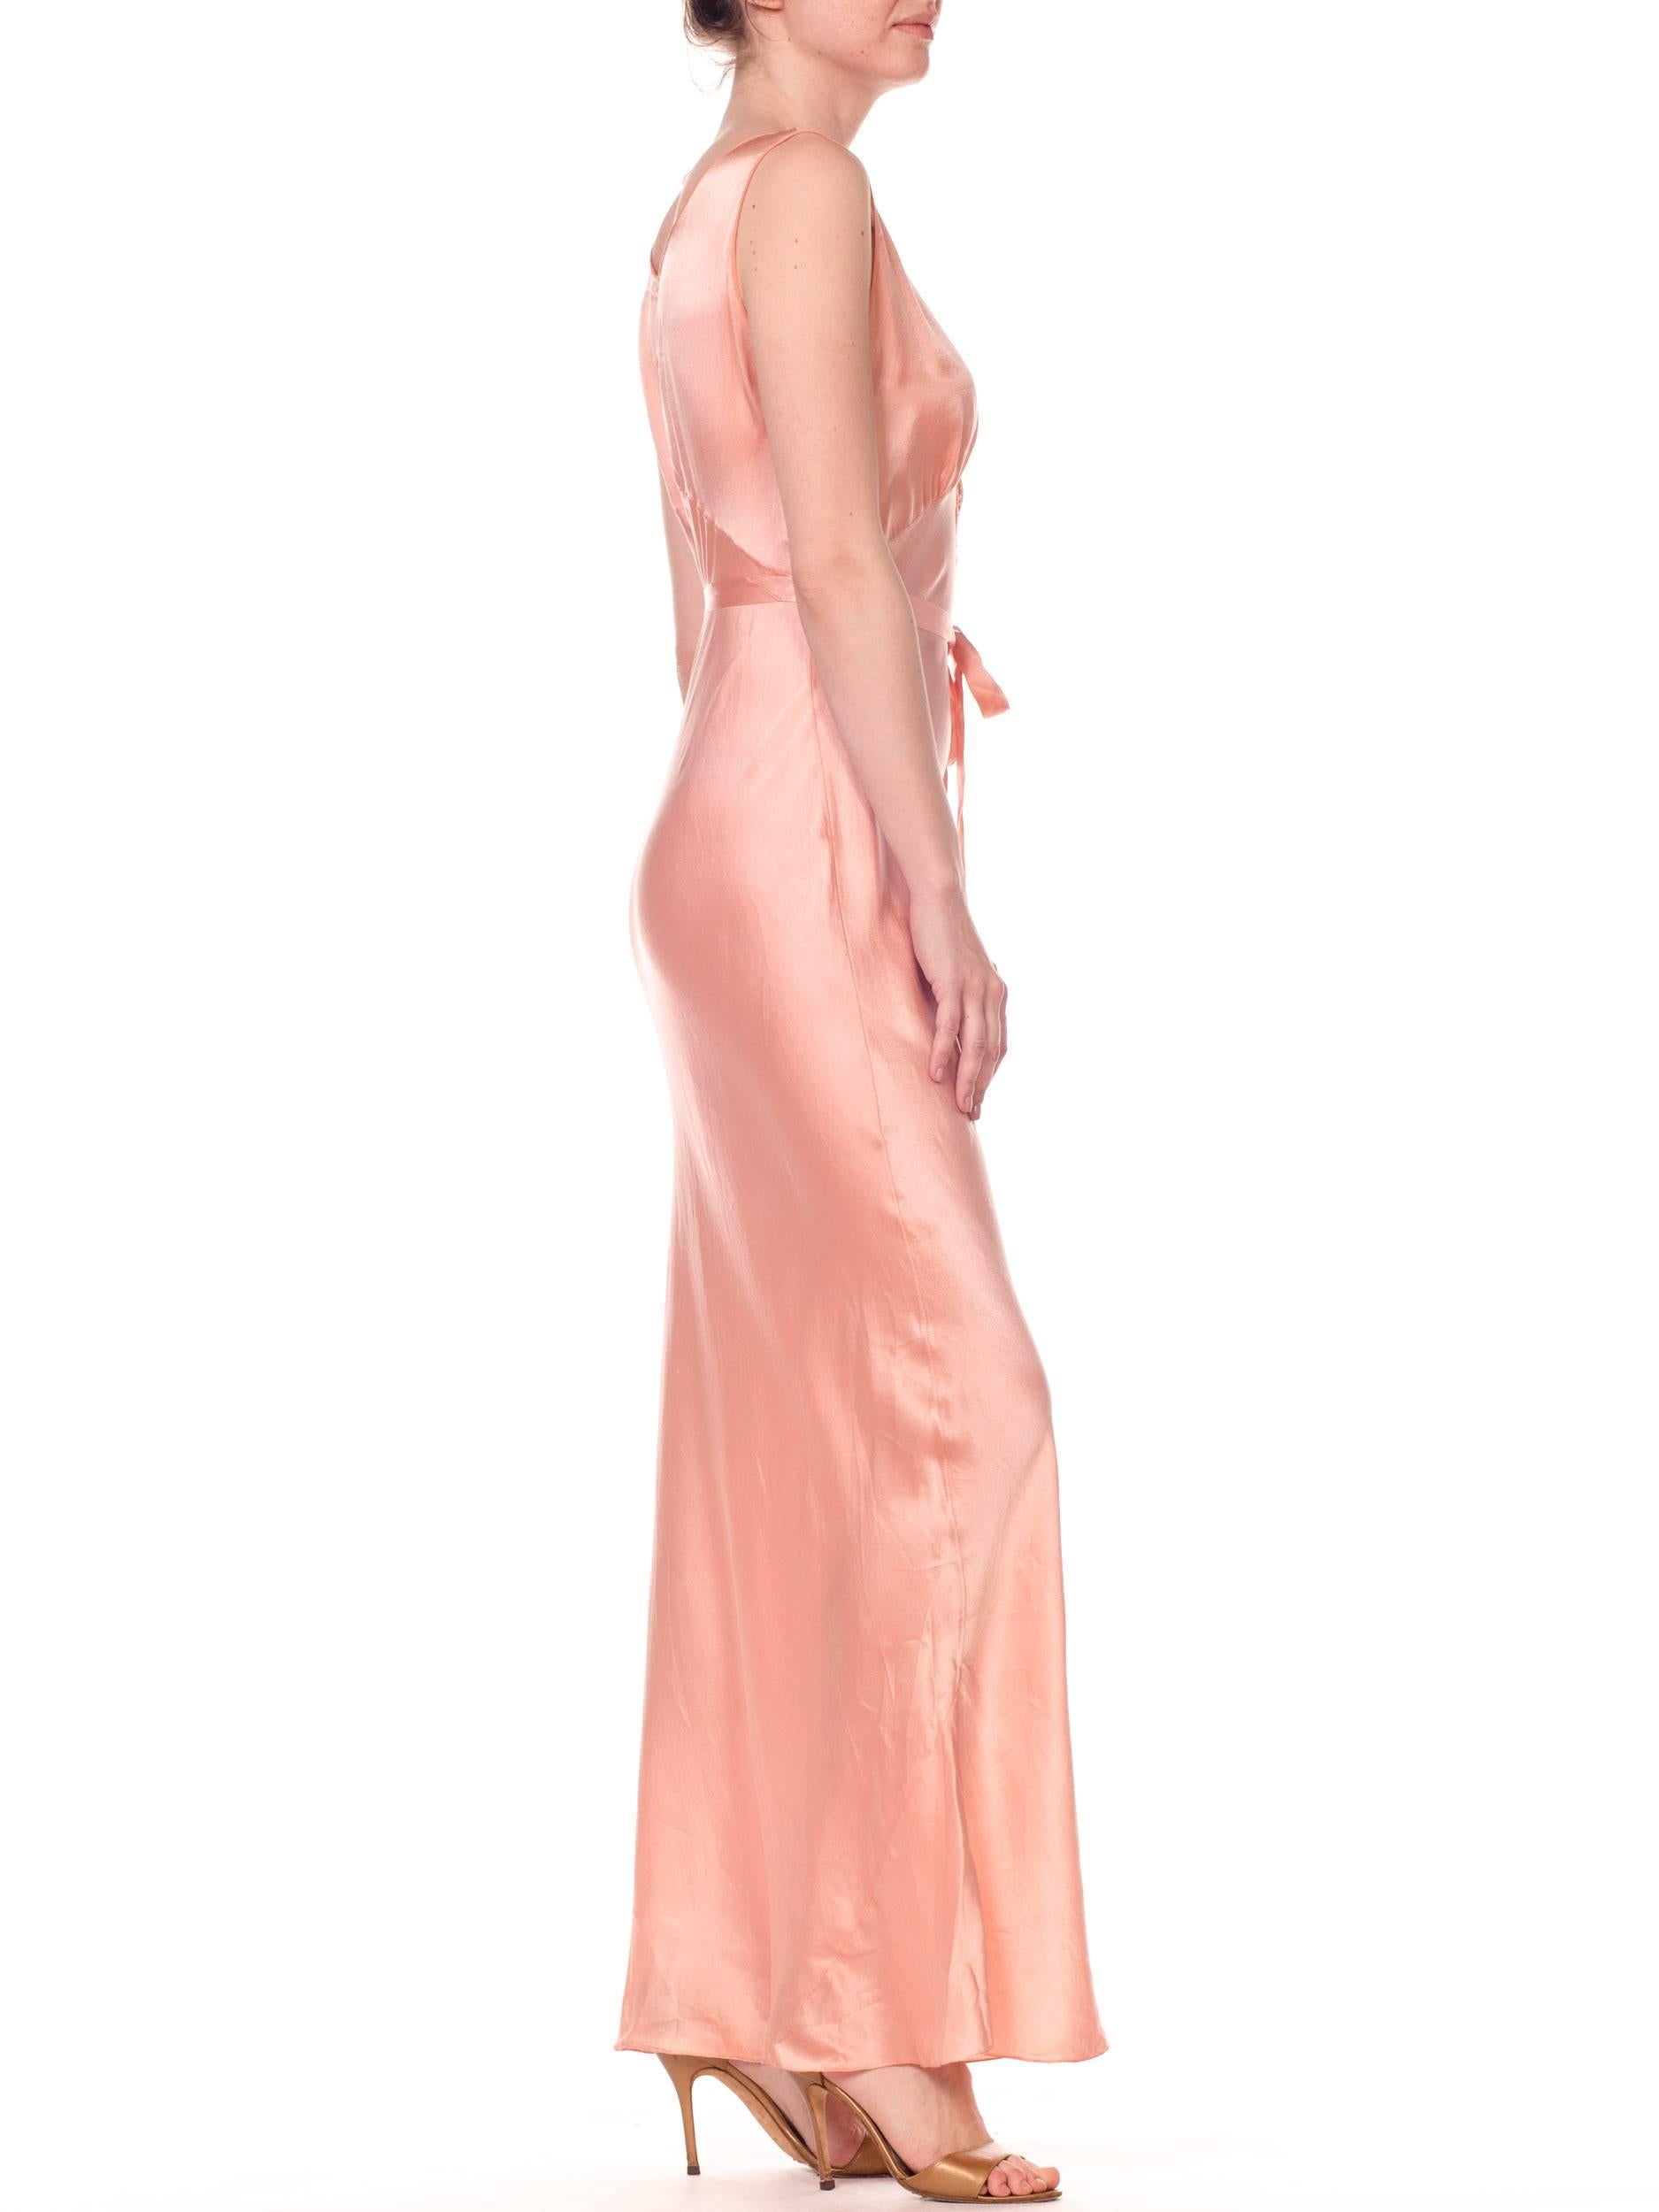 pink negligee